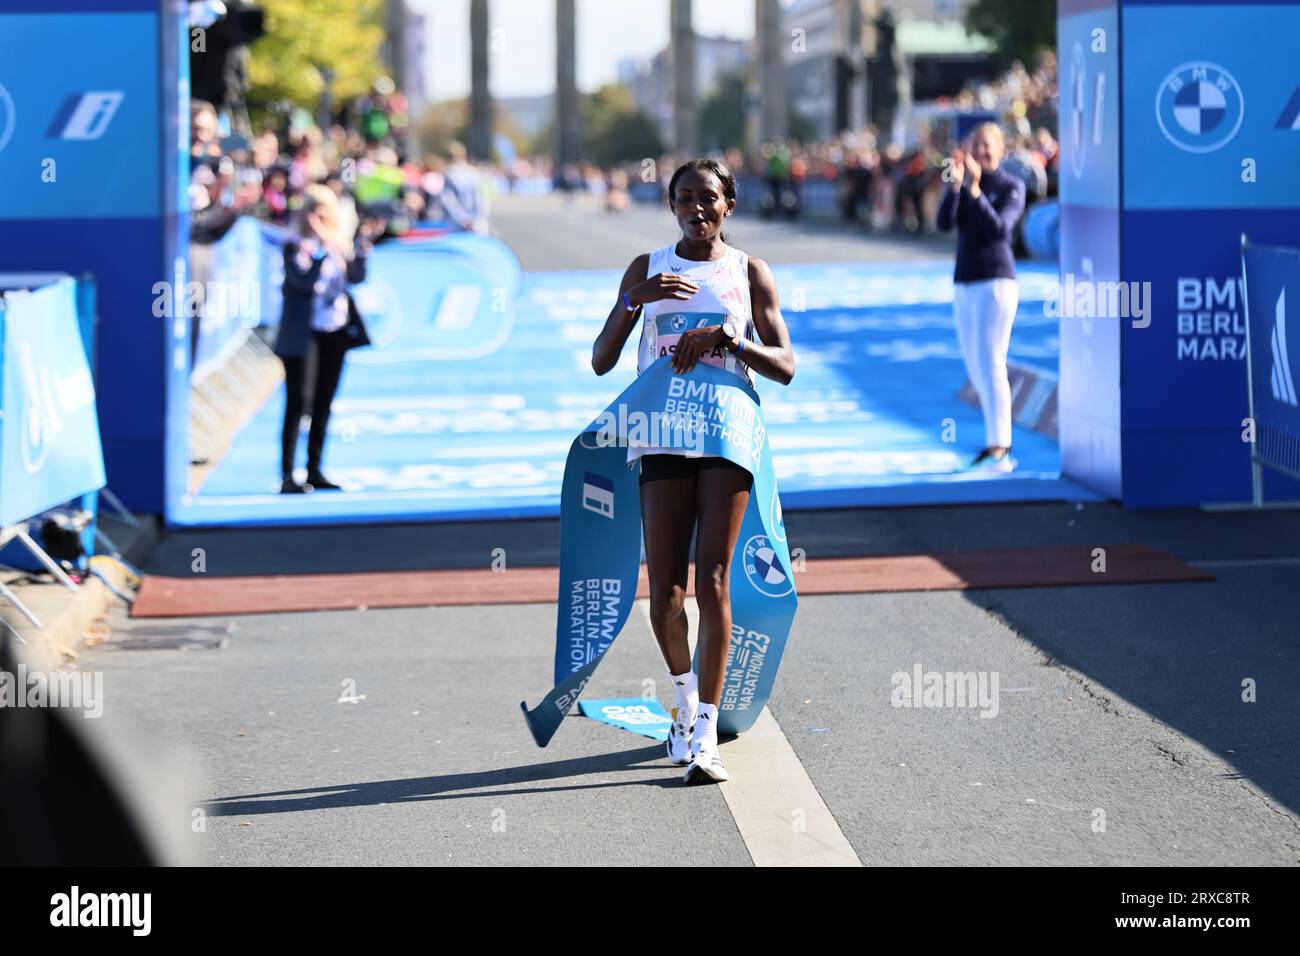 24/09/2023, Berlino, Germania. Tigst Assefa alla fine. Tigst Assefa dall'Etiopia corre un favoloso record del mondo e vince la 49a maratona di Berlino femminile in 2:11:53 ore. Il secondo posto è andato allo Sheila CHEPKIRUI dal Kenya con 2:17:49 ore e il terzo posto è stato vinto da Magdalena Shauri dalla Tanzania con 02:18:43 ore. Sven Sstruck / Alamy Live News Sven Sstruck / Alamy Live News Foto Stock